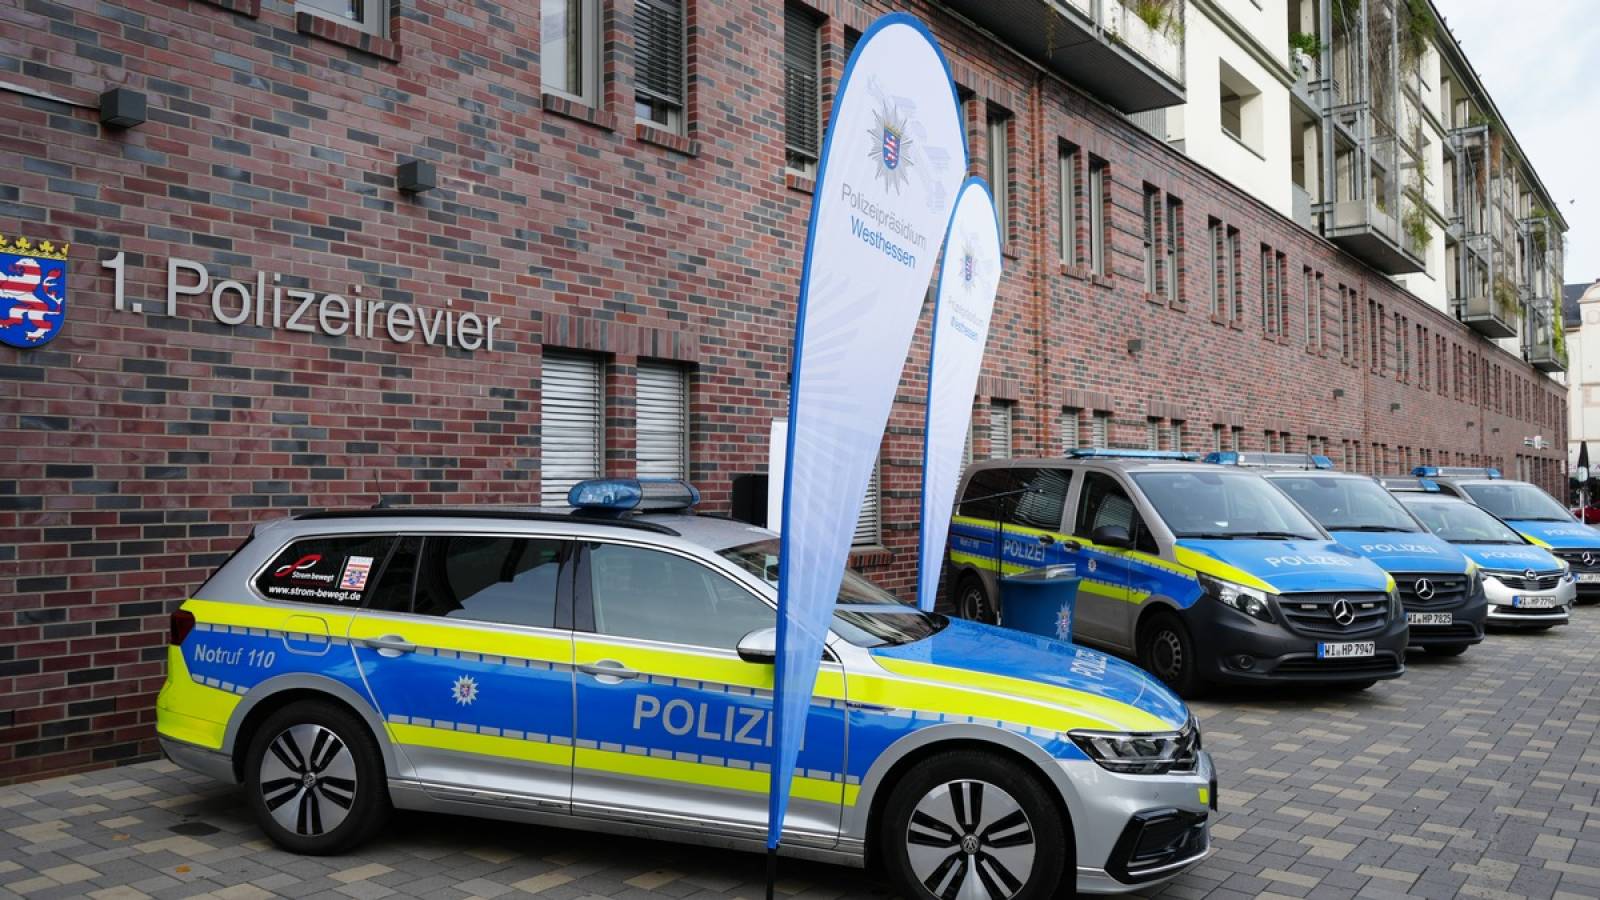 Personelle Verstärkung des 1. Polizeireviers in Wiesbaden - Eine Streife mehr auf der Straße